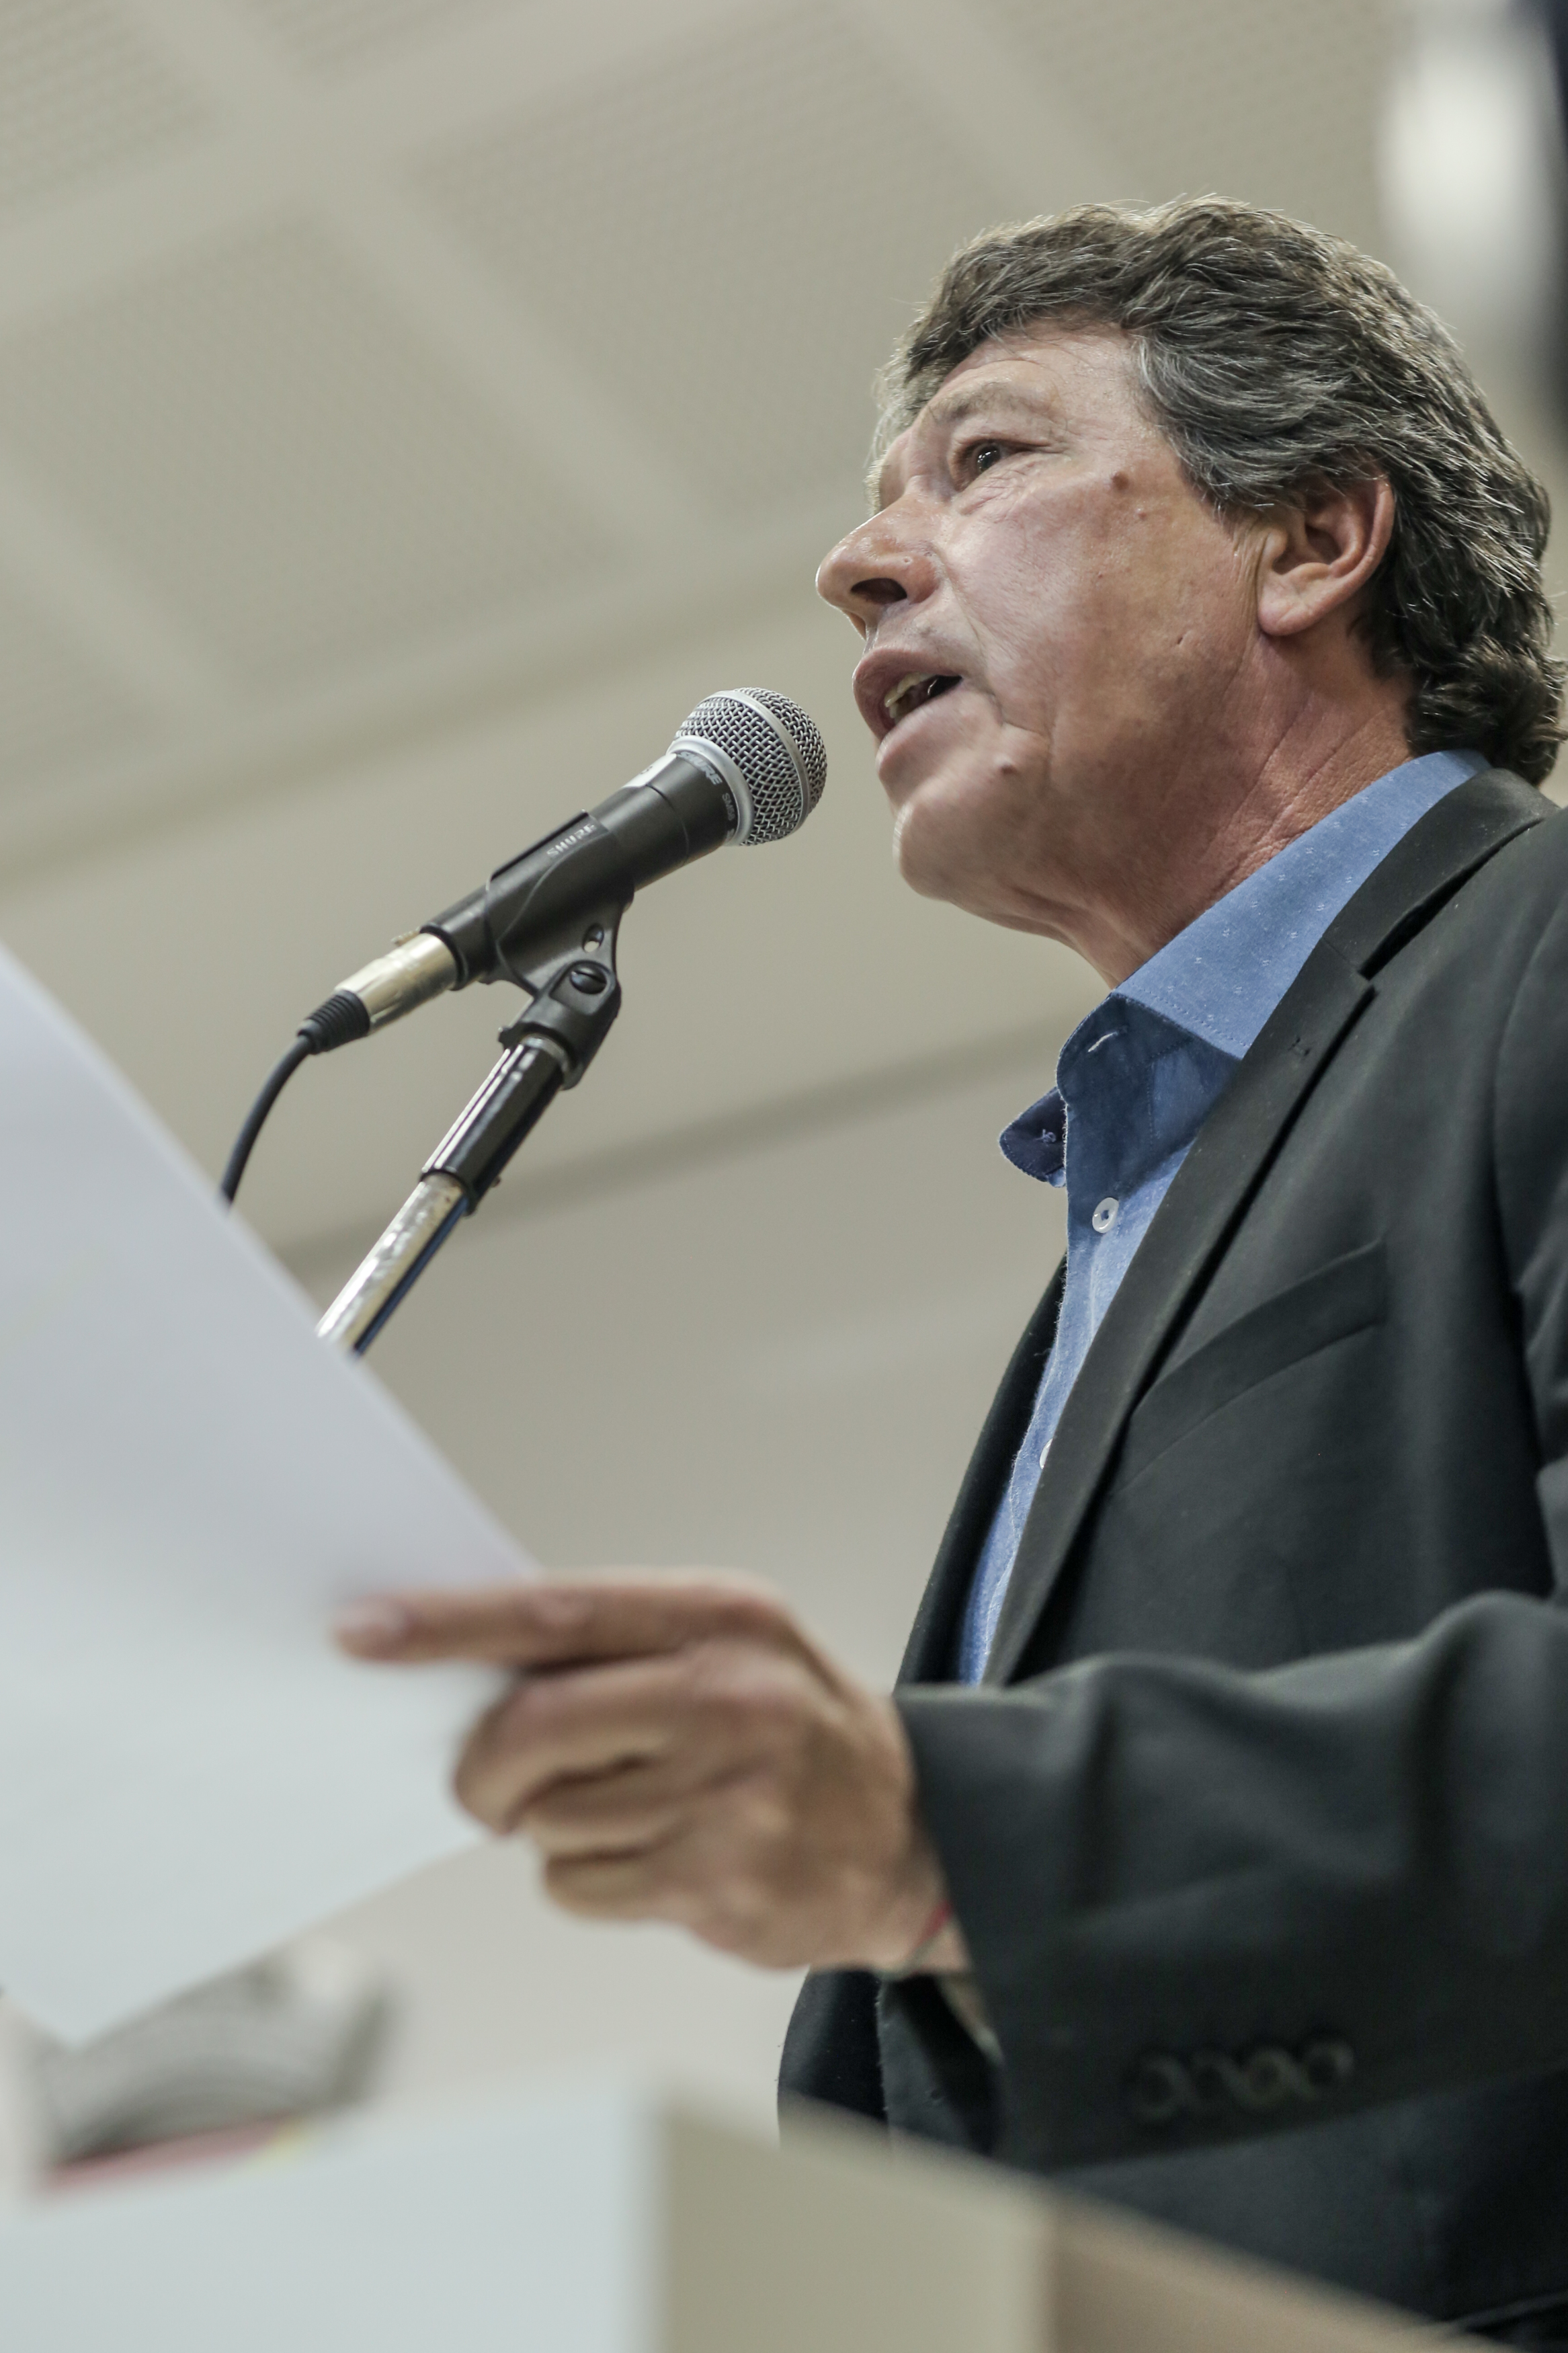 08/02/2018 - Durante sessão, Serjão comenta situação do sistema político nacional